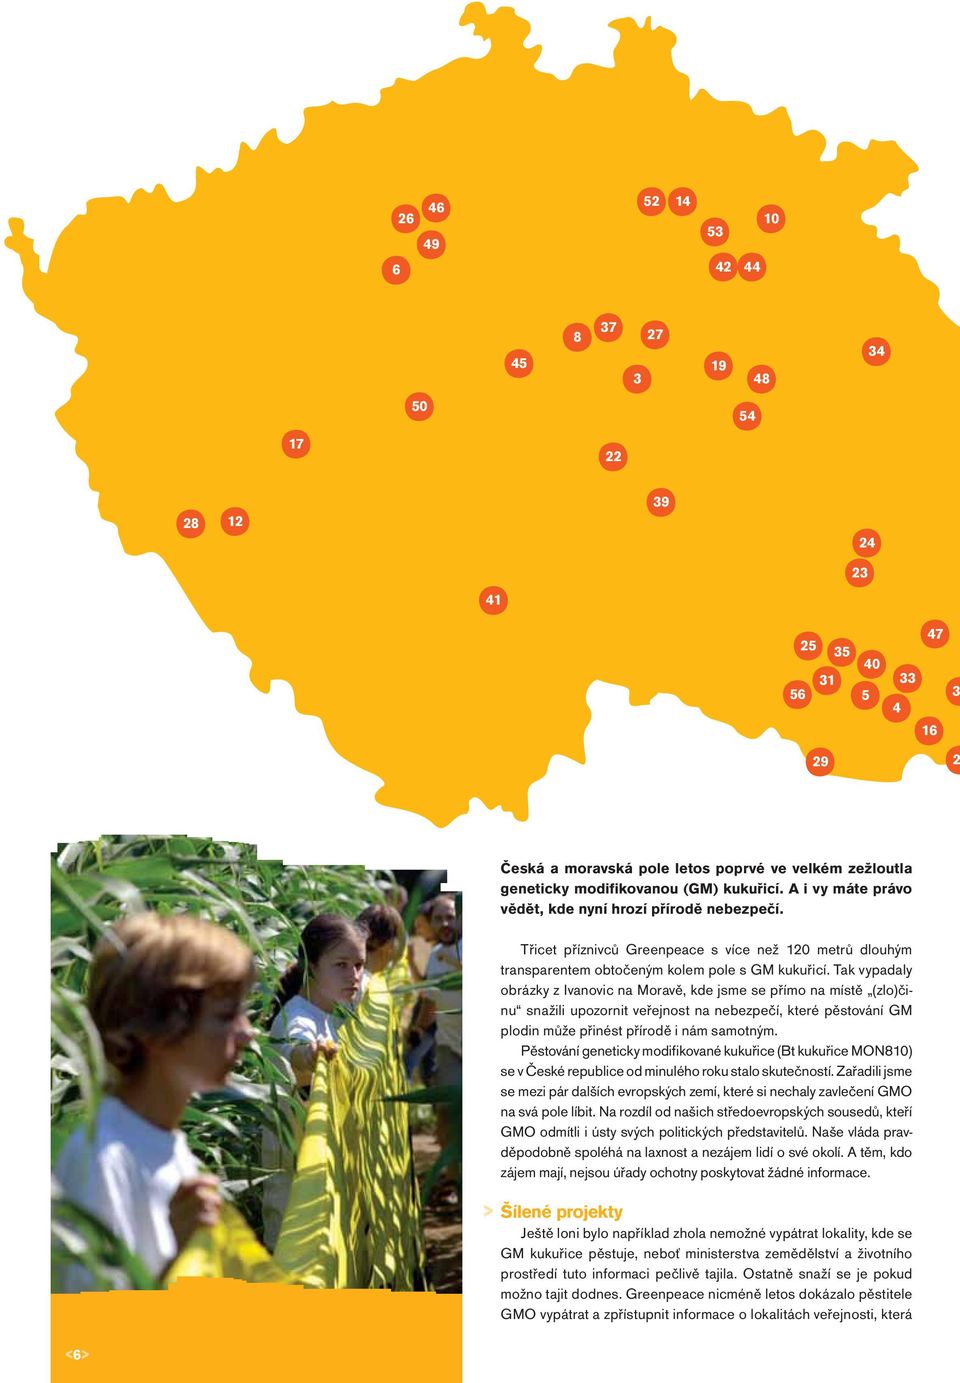 Tak vypadaly obrázky z Ivanovic na Moravě, kde jsme se přímo na místě (zlo)činu snažili upozornit veřejnost na nebezpečí, které pěstování GM plodin může přinést přírodě i nám samotným.